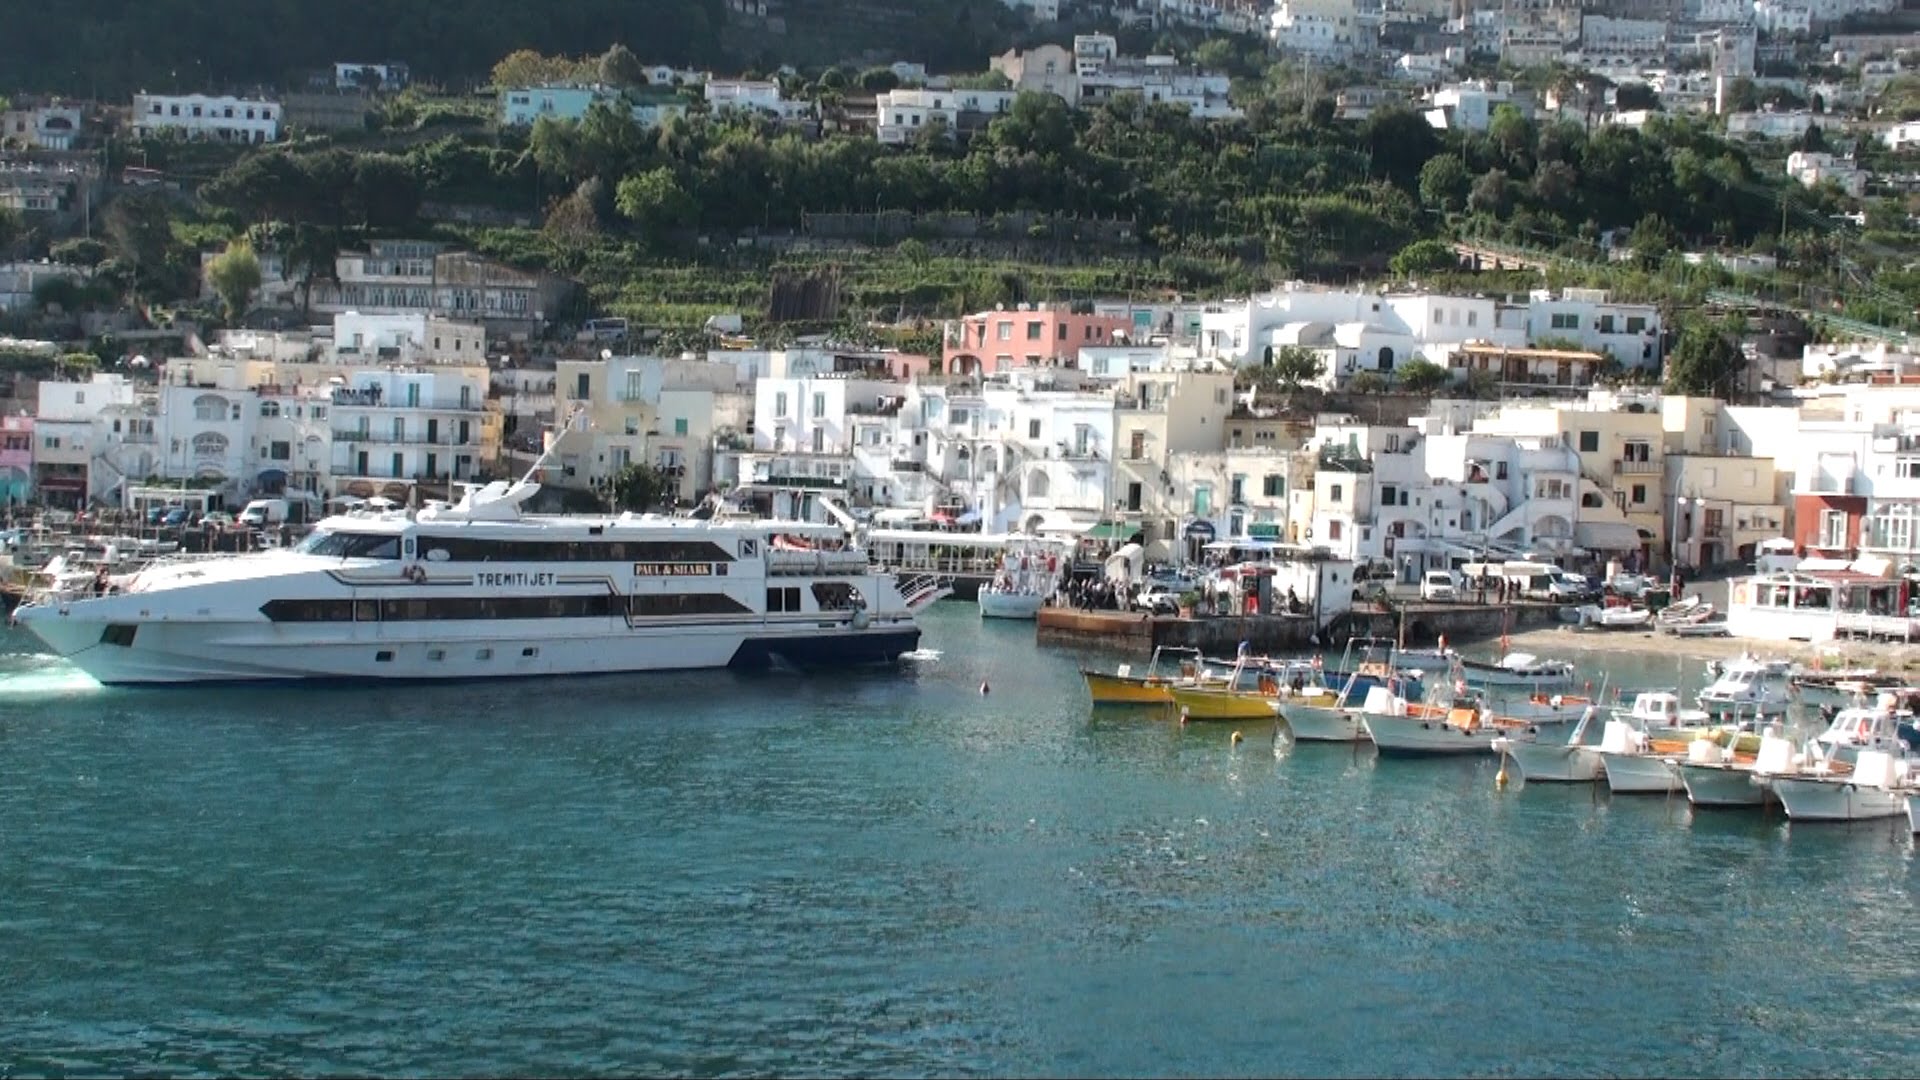 Capri. Shopping con carte di credito intestate ad altre persone: denunciate due turiste inglesi